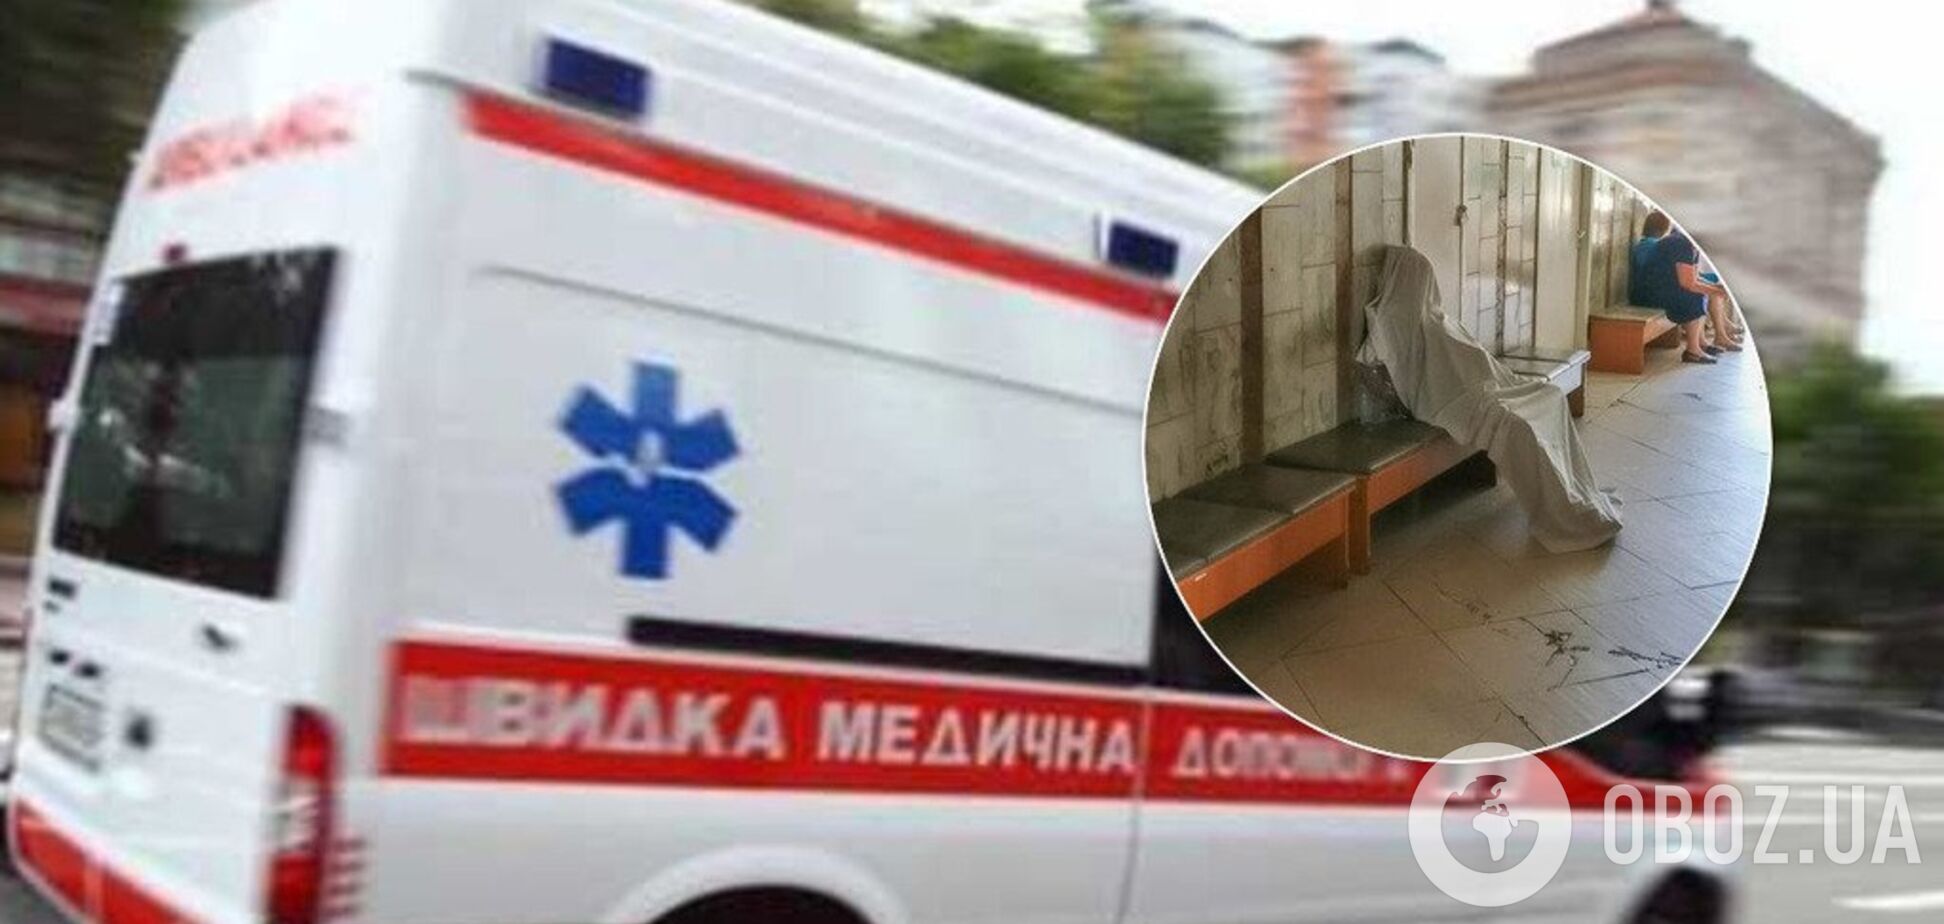 Померла в черзі до лікаря: подробиці смерті пенсіонерки в Києві